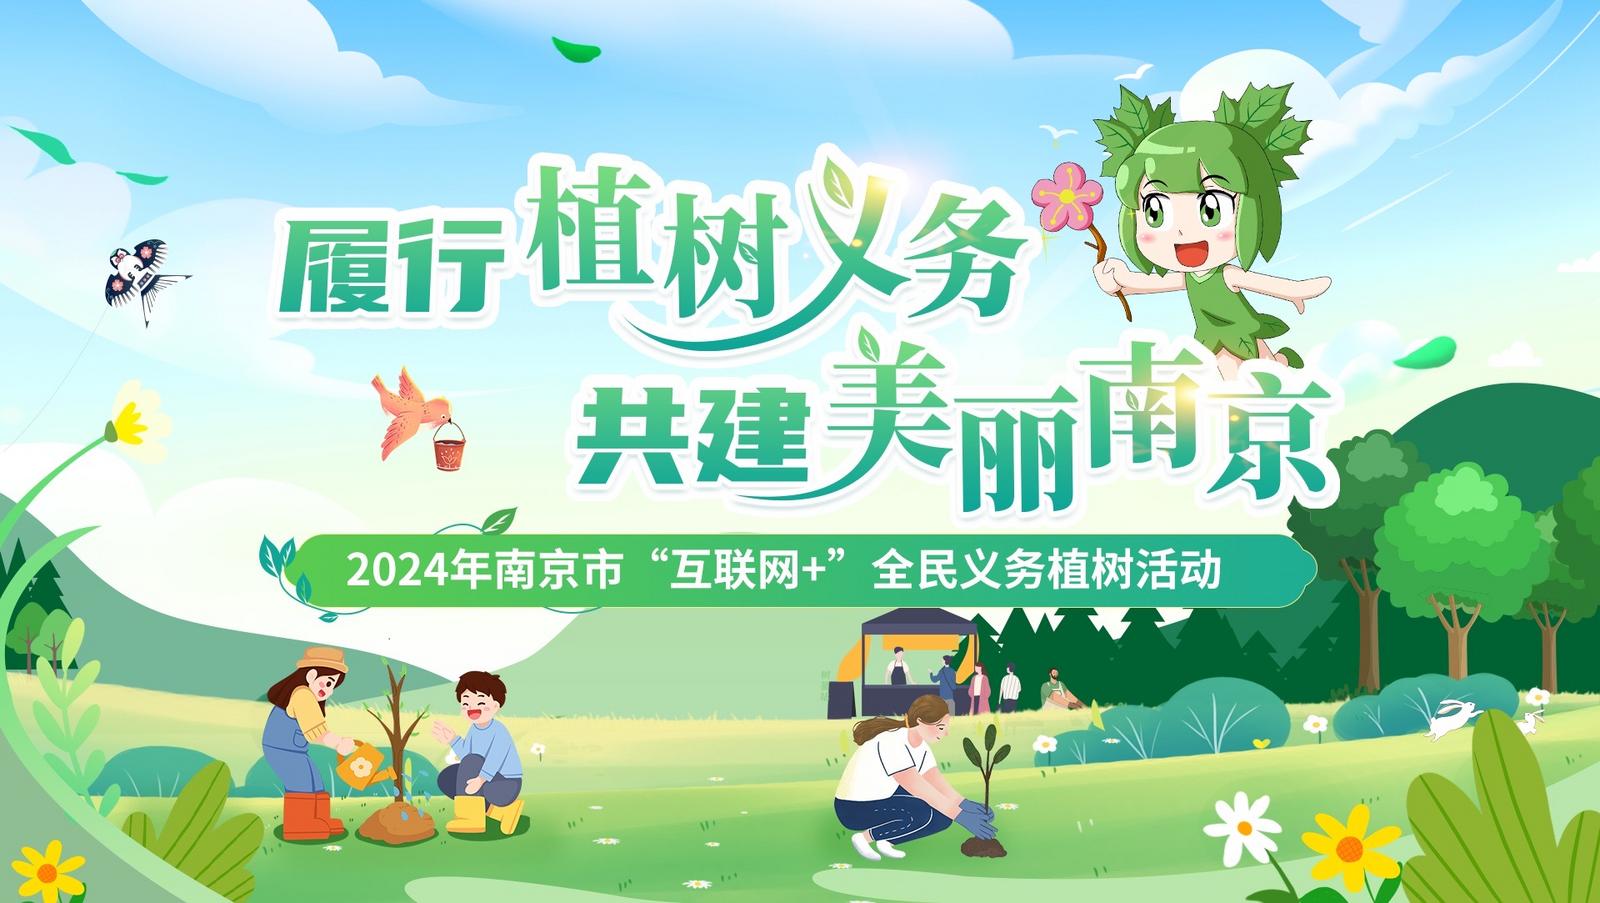 【南京】一起上春山!2024年南京全民义务植树活动3月4日起报名